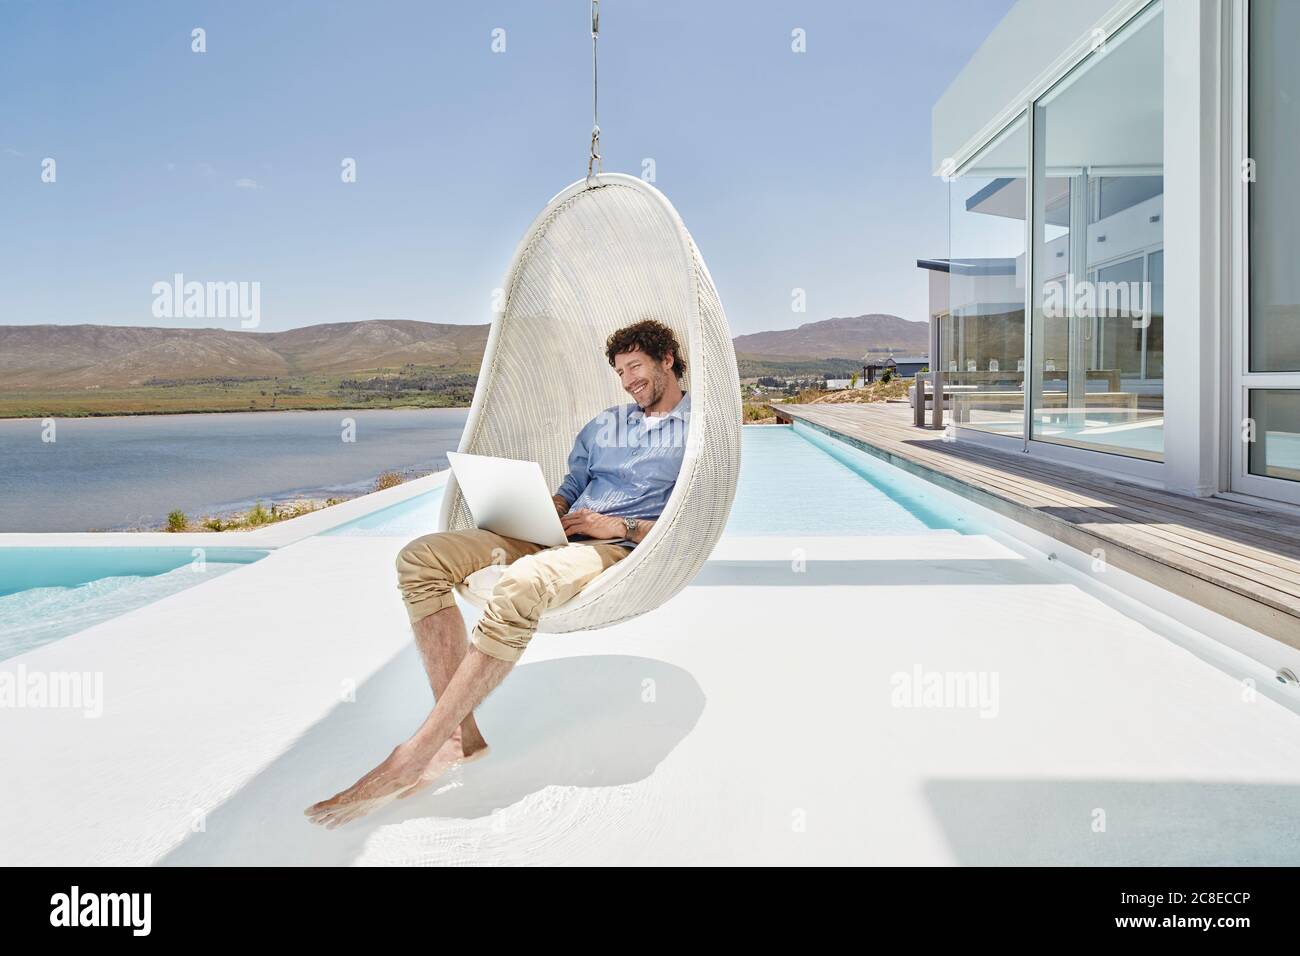 Mann, der mit einem Laptop in einem Hängesessel über dem Pool sitzt Stockfoto